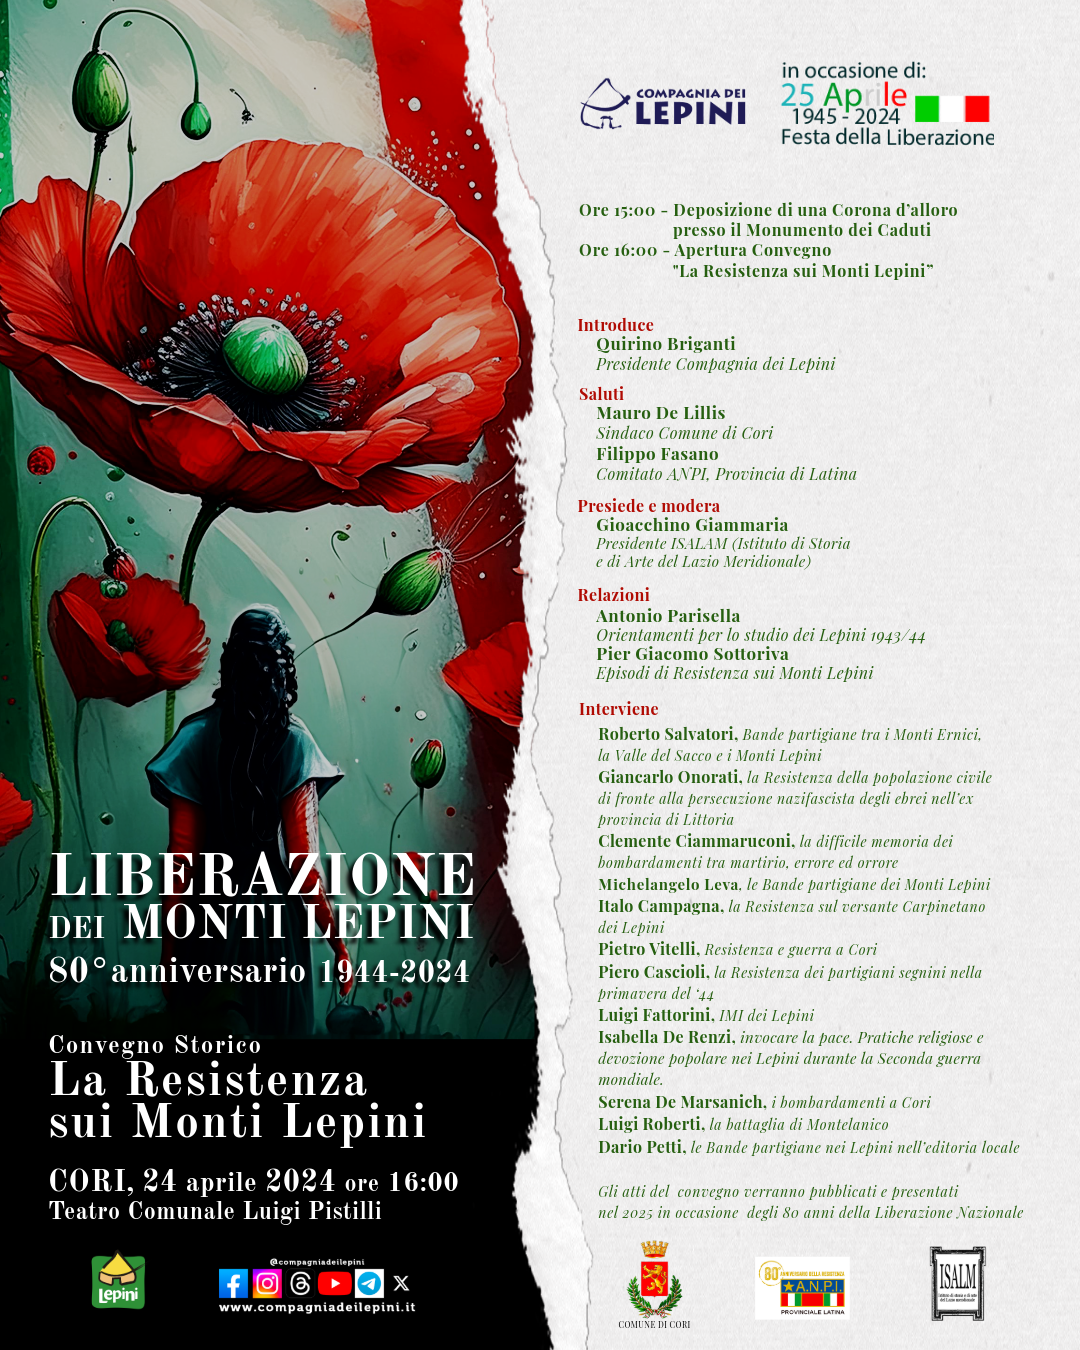 Cori: convegno storico: "La Resistenza sui Monti Lepini" @ Cori